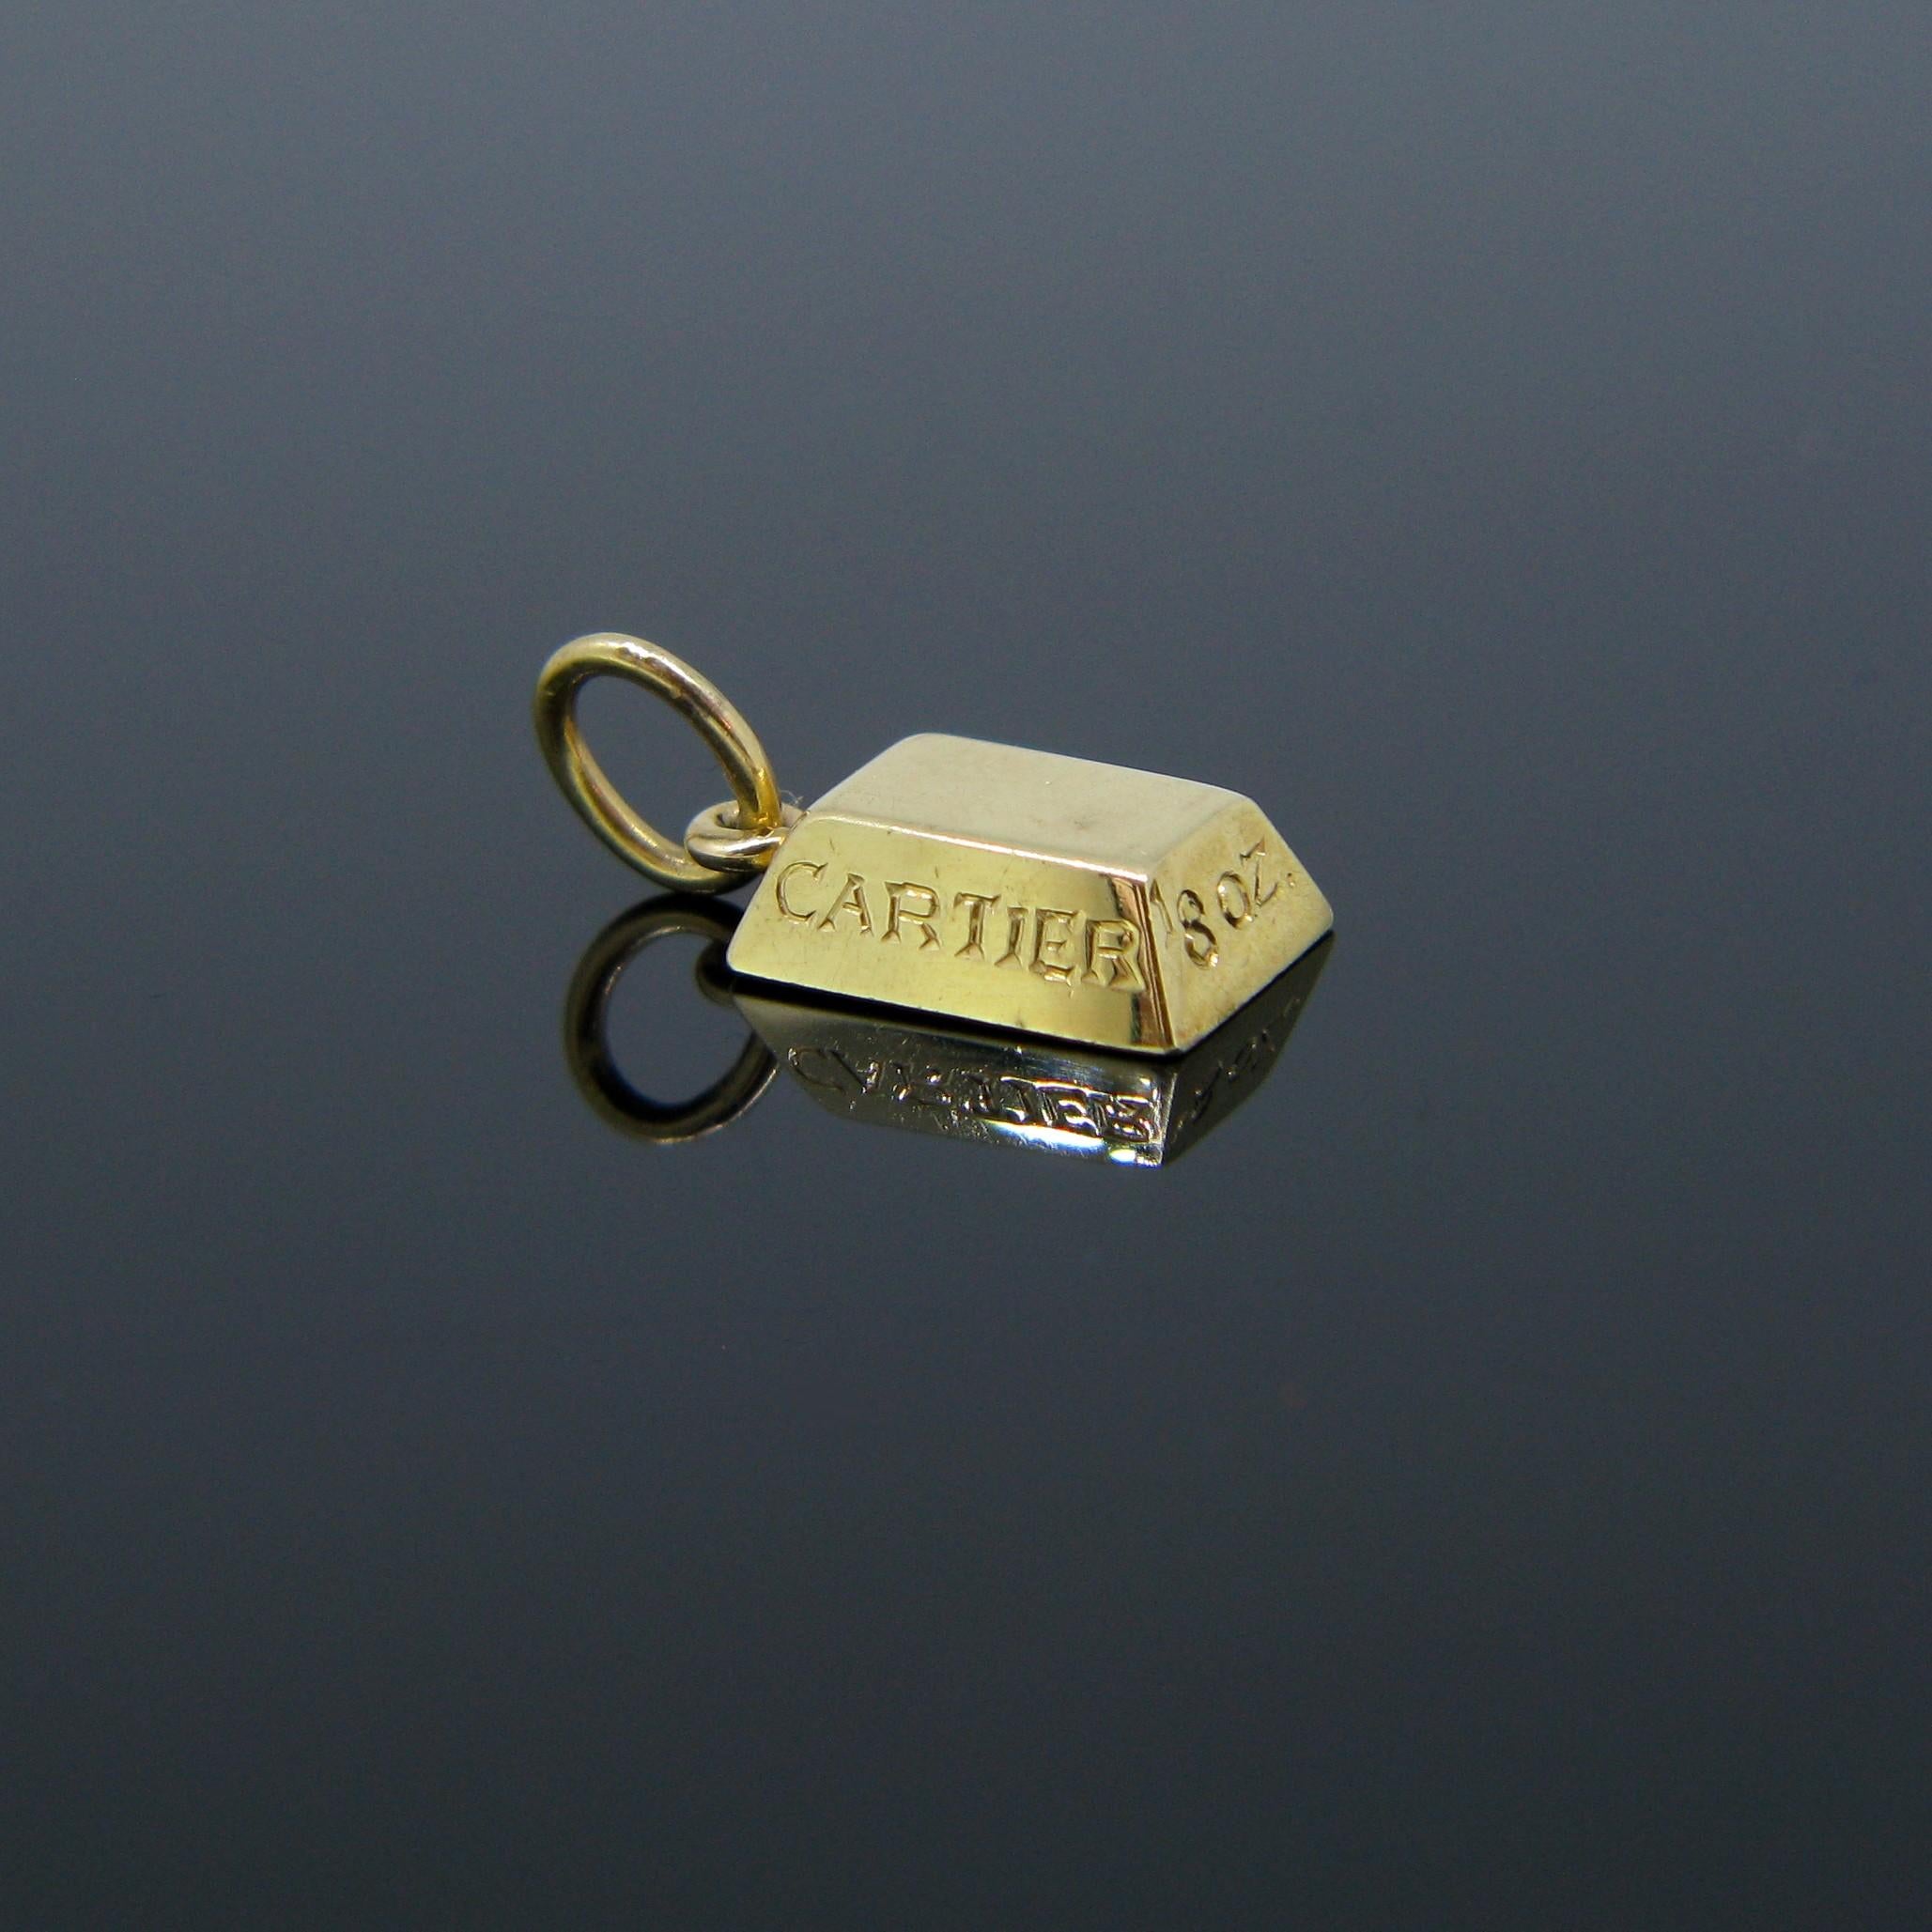 Ce pendentif signé Cartier est une barre ou un lingot d'or de 1/8 d'once. Elle est entièrement réalisée en or jaune 18kt. Il est signé Cartier au dos. Il est également gravé de la marque Cartier sur l'un des côtés. 

Poids :	4.2gr


Métal :		Or